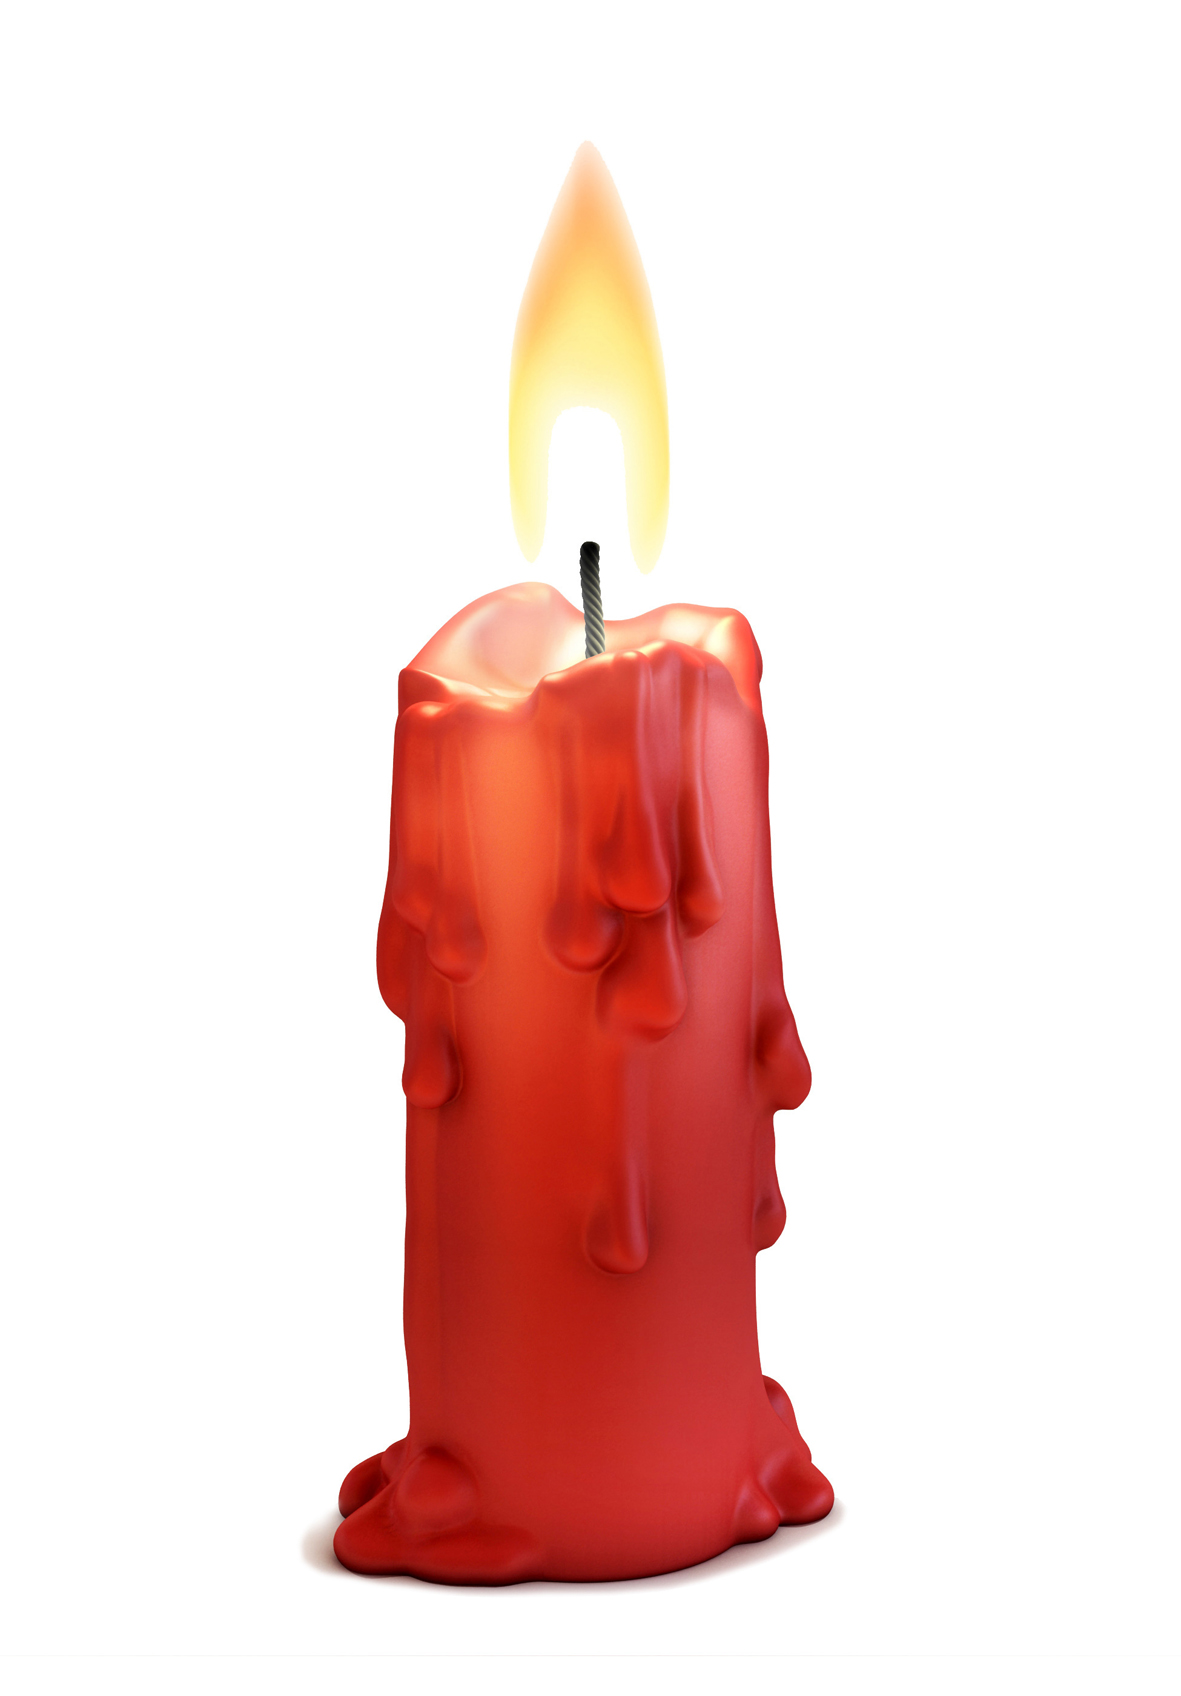 Svíčky déle hoří. Jestliže vložíte svíčky před zapálením na dvě hodiny do mrazáku, budou hořet podstatně déle.